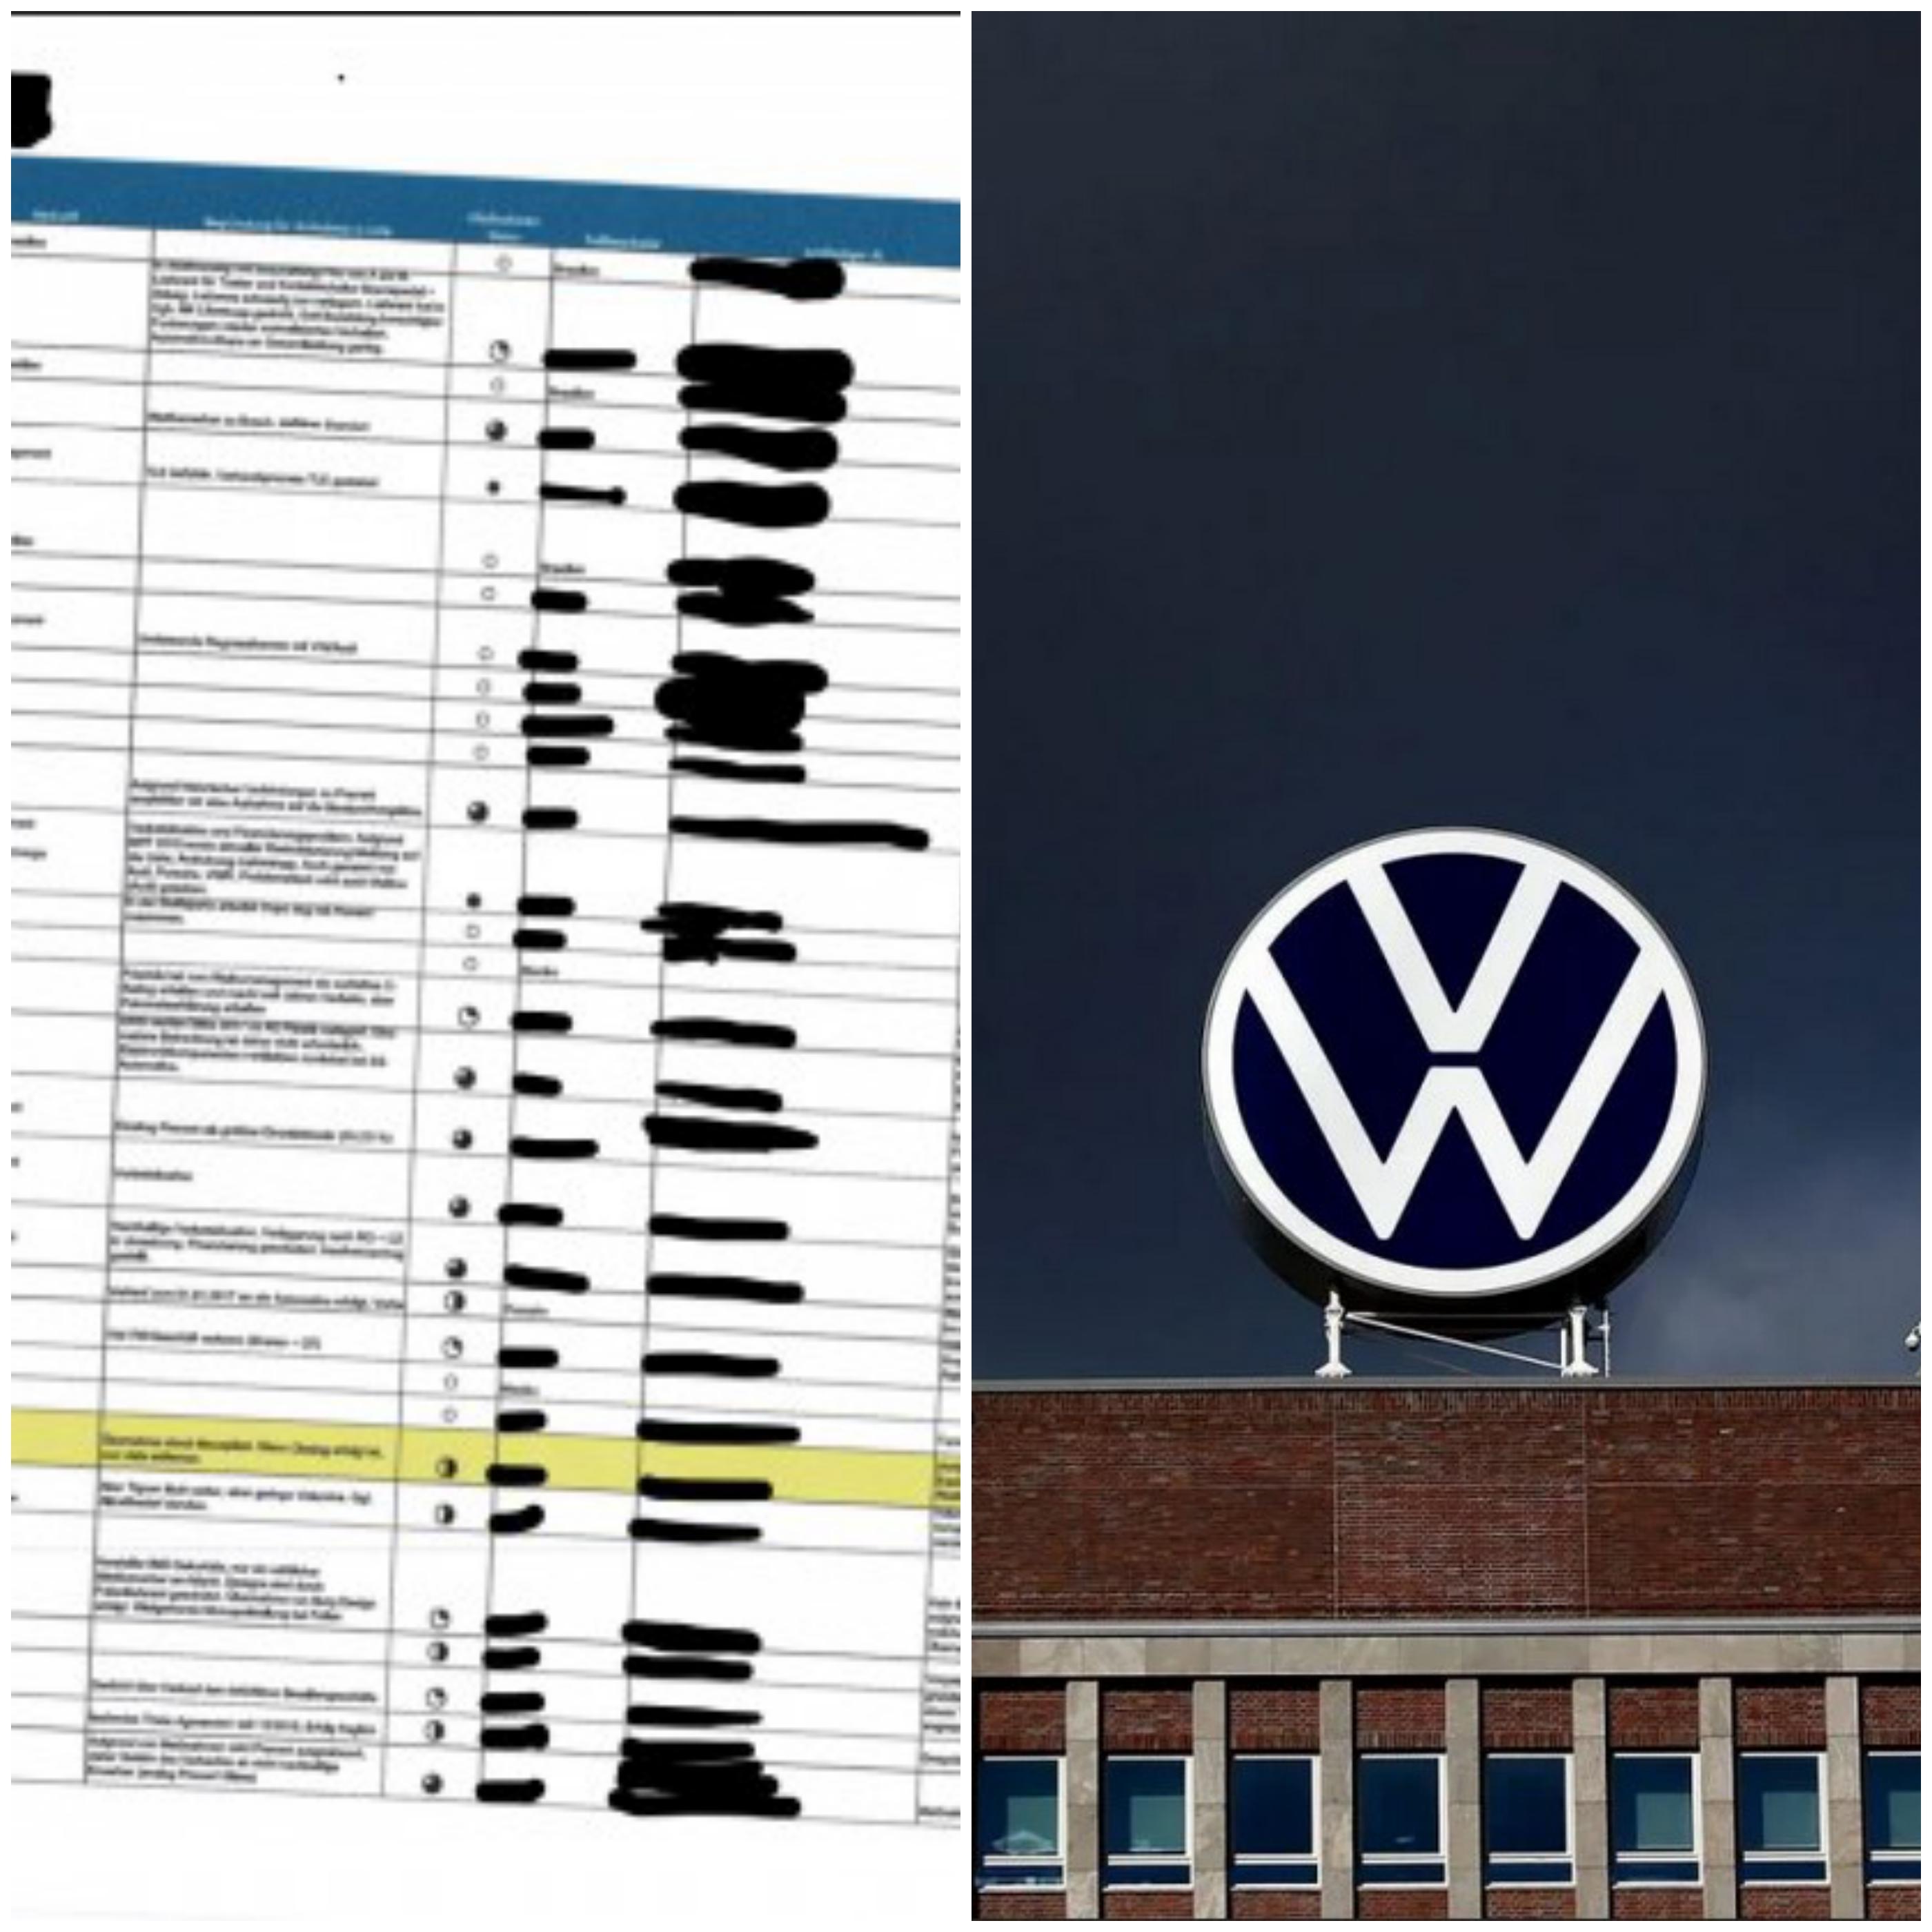 Tajni snimci: Da li je "Volkswagen" prekršio američki zakon u borbi s "Preventom"?